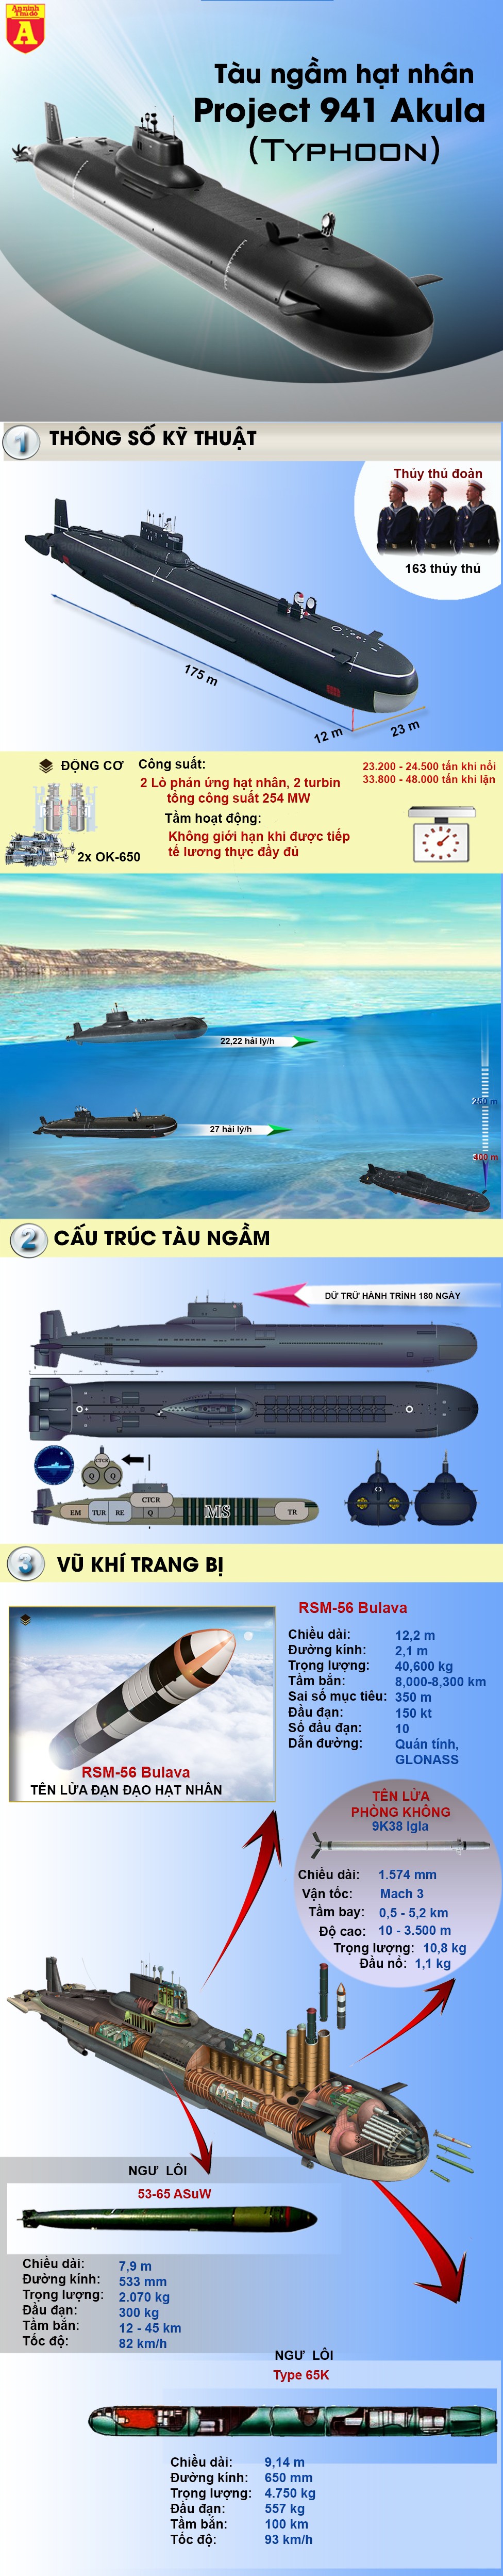 [Infographic] Siêu tàu ngầm lớn bằng tàu sân bay, có thể 'thổi bay' cả một quốc gia ảnh 2